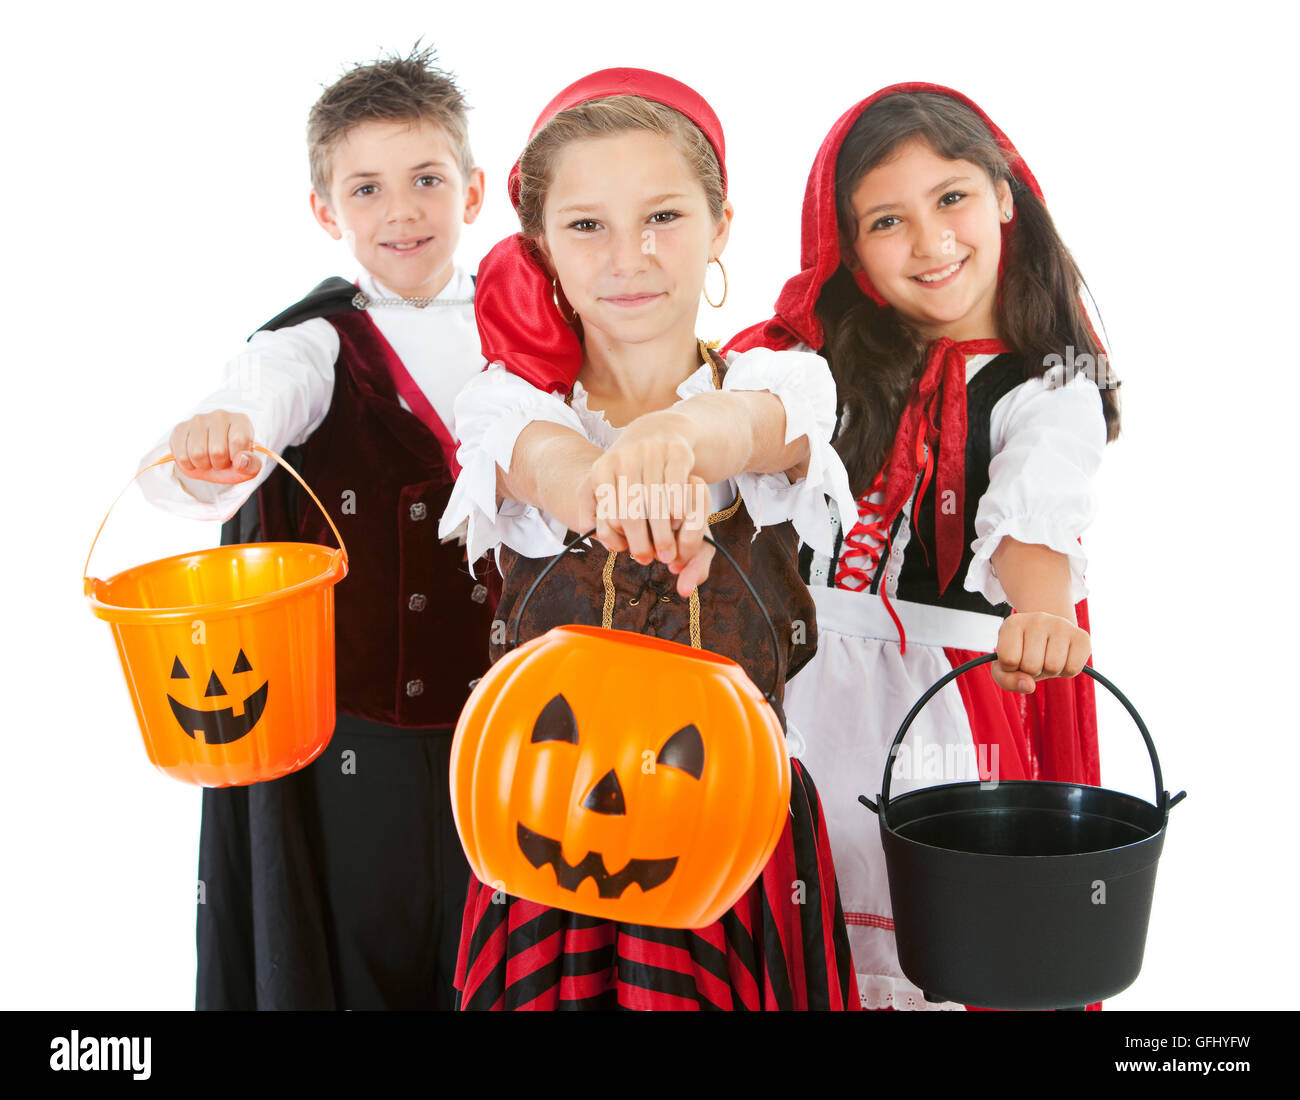 Halloween-Serie mit niedlichen Kinder verkleidet als Dracula, ein Pirat und Little Red Riding Hood.  Isoliert auf weiss. Stockfoto